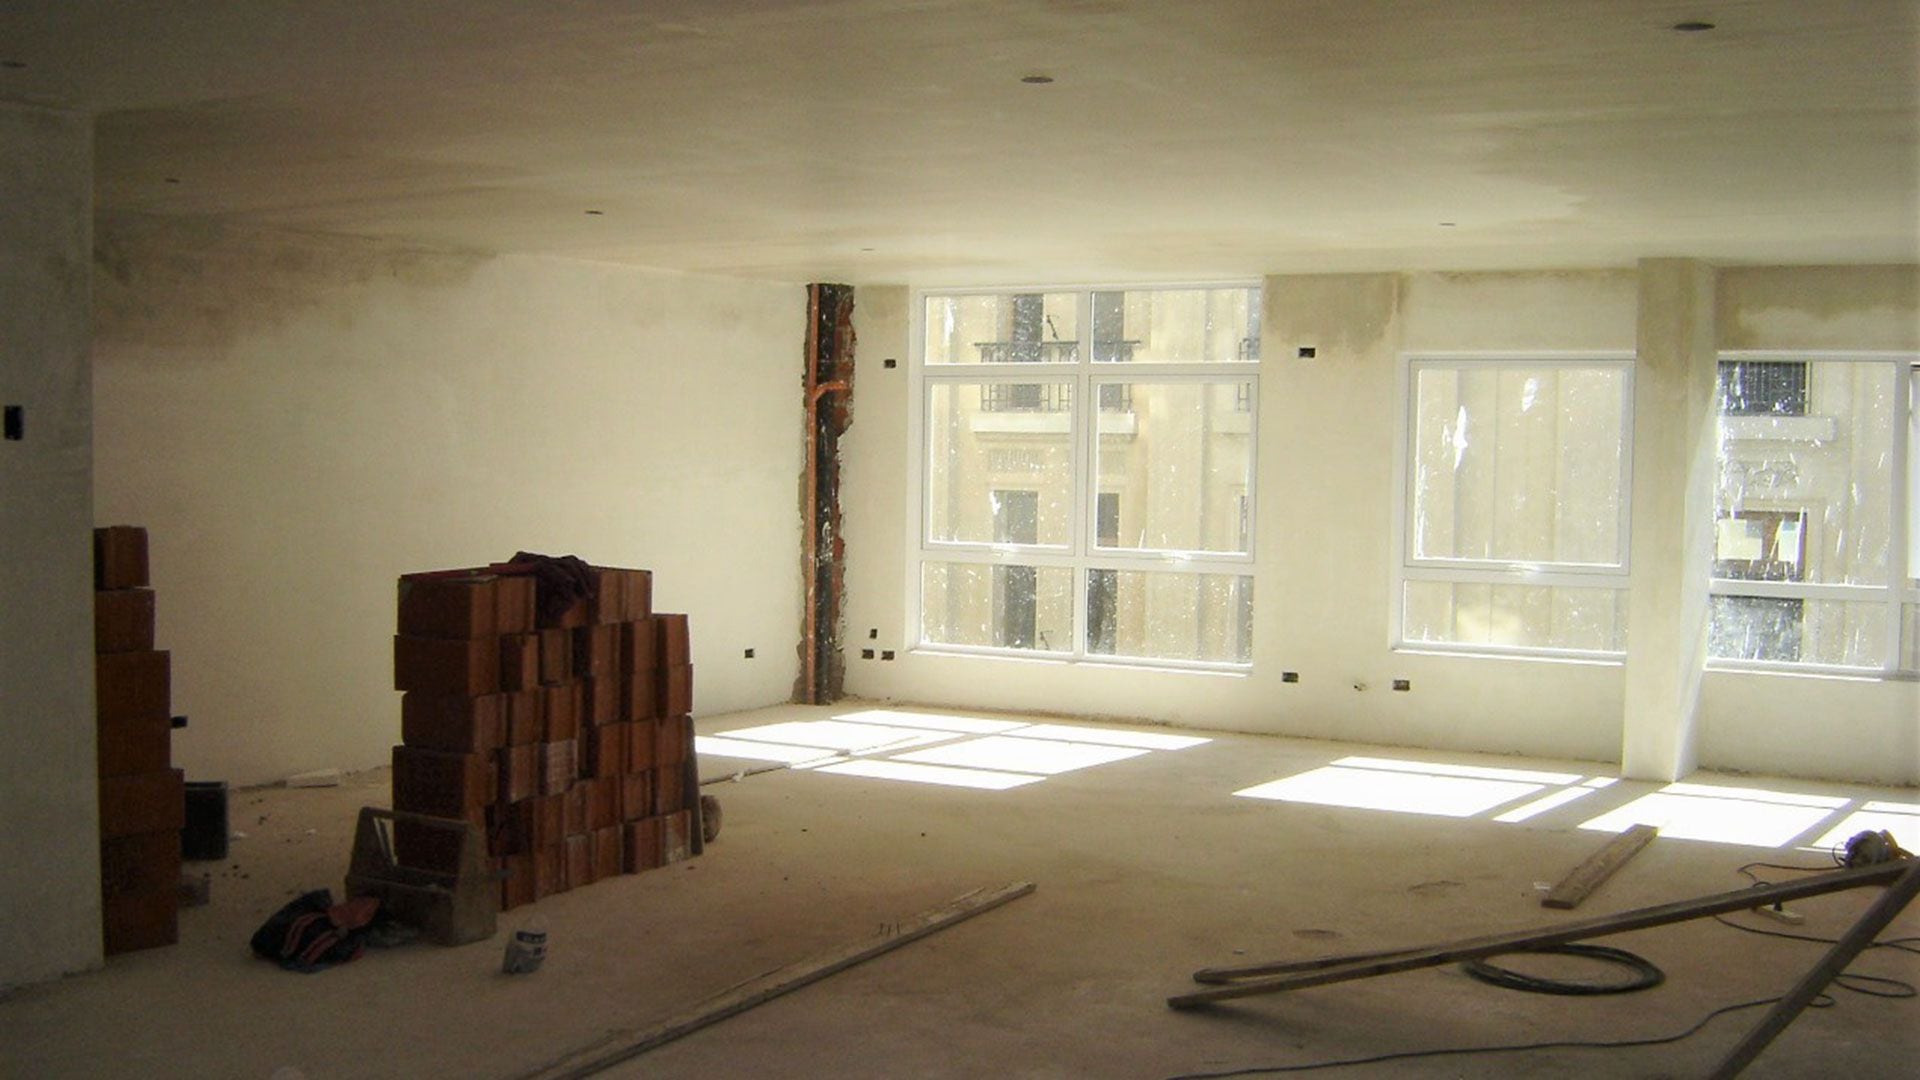 Una obra para reconvertir una oficina en vivienda demoraría entre 6 y 9 meses